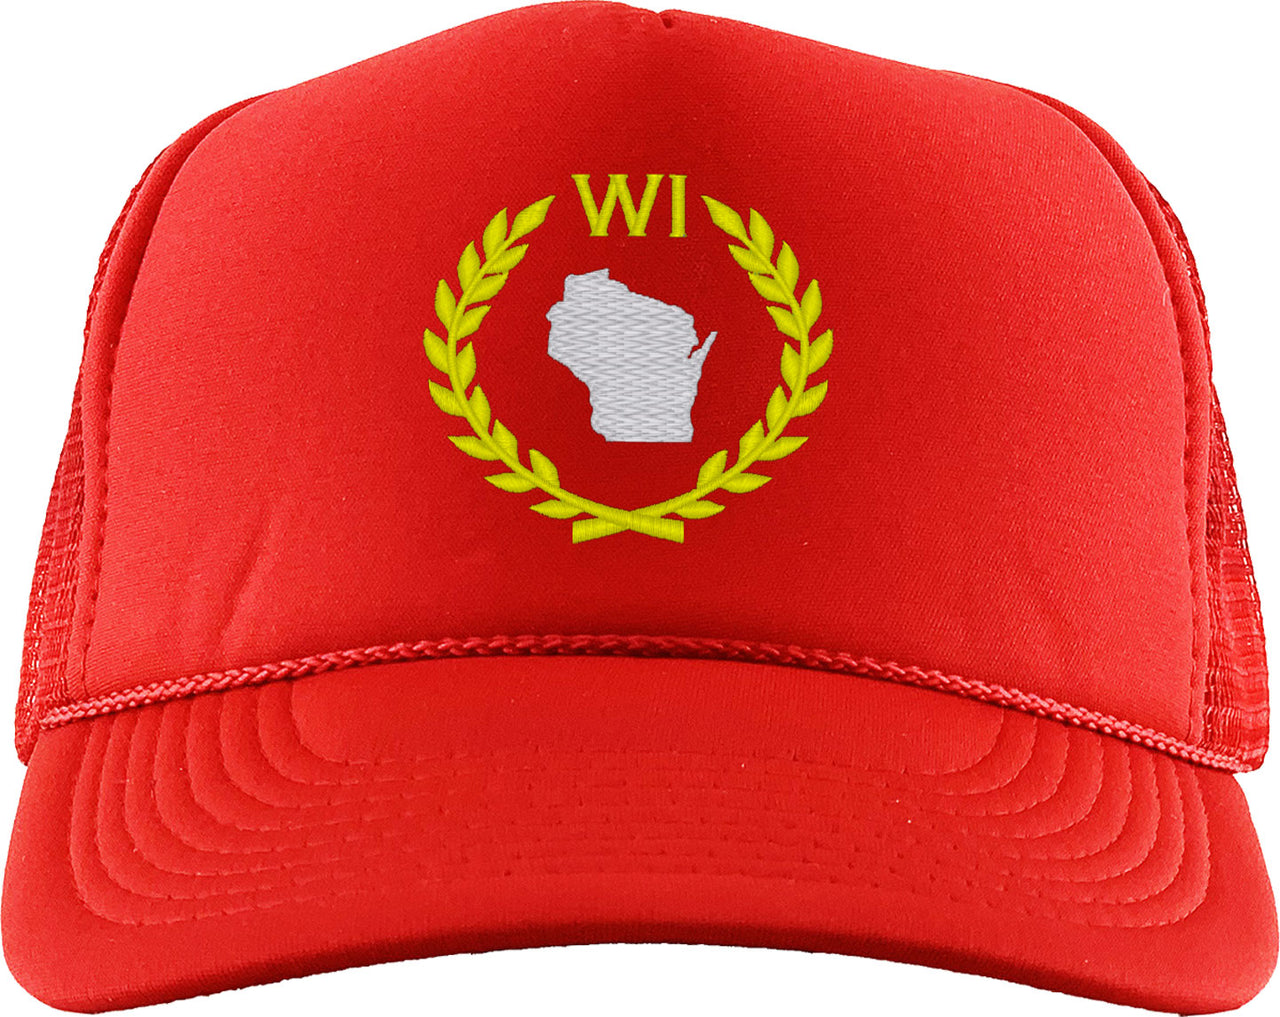 Wisconsin State Foam Trucker Hat